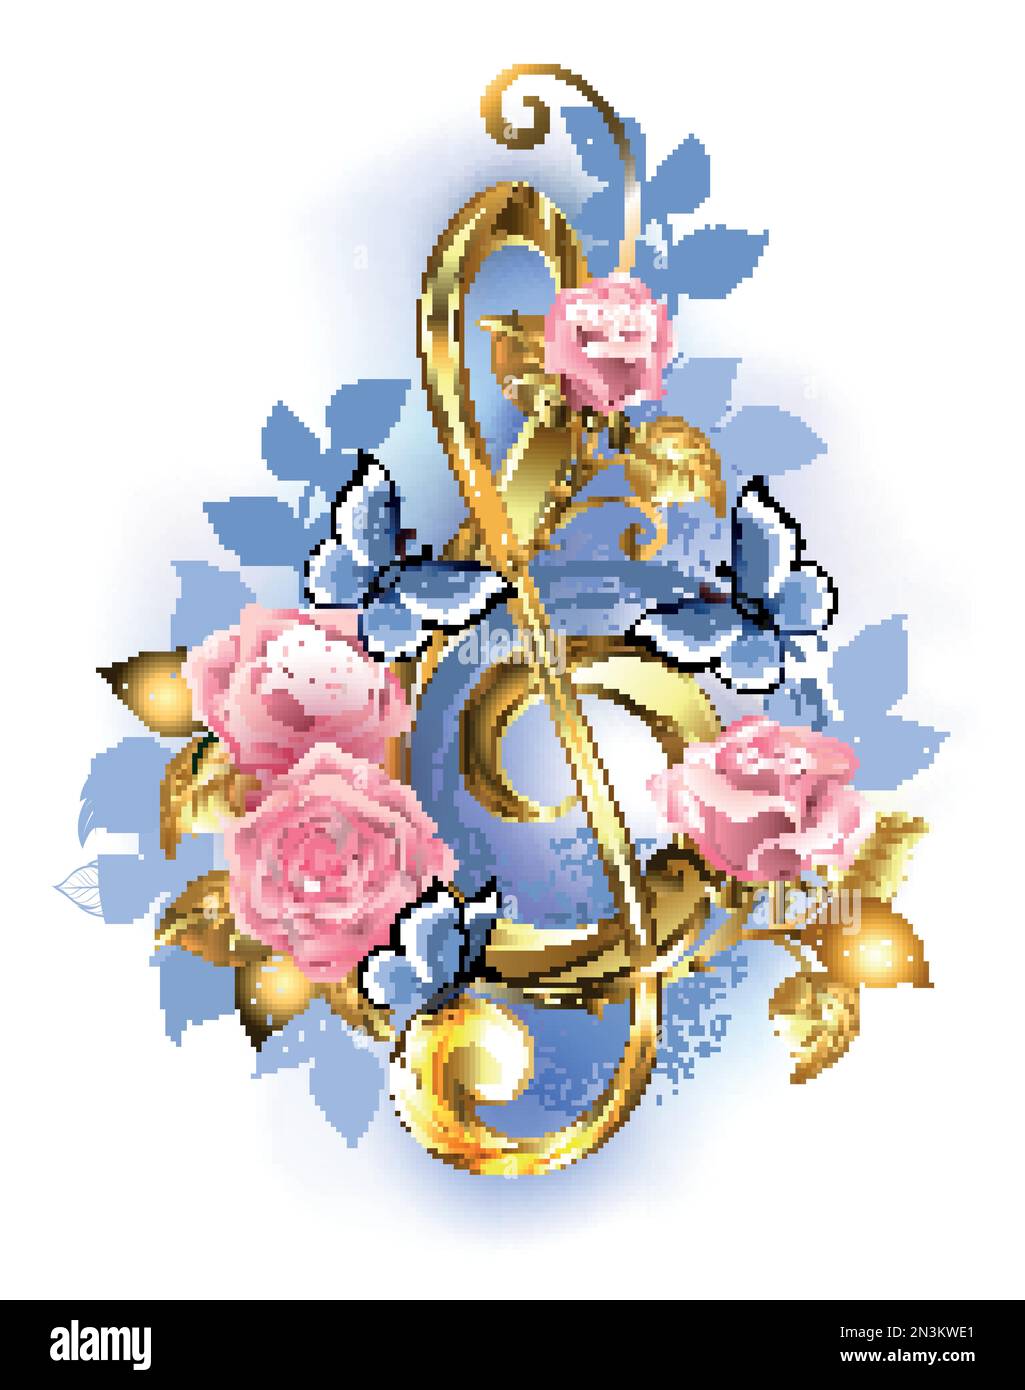 Oro, gioielli, spolverino decorato con delicate rose rosa dipinte artisticamente con farfalle blu scintillanti. Illustrazione Vettoriale